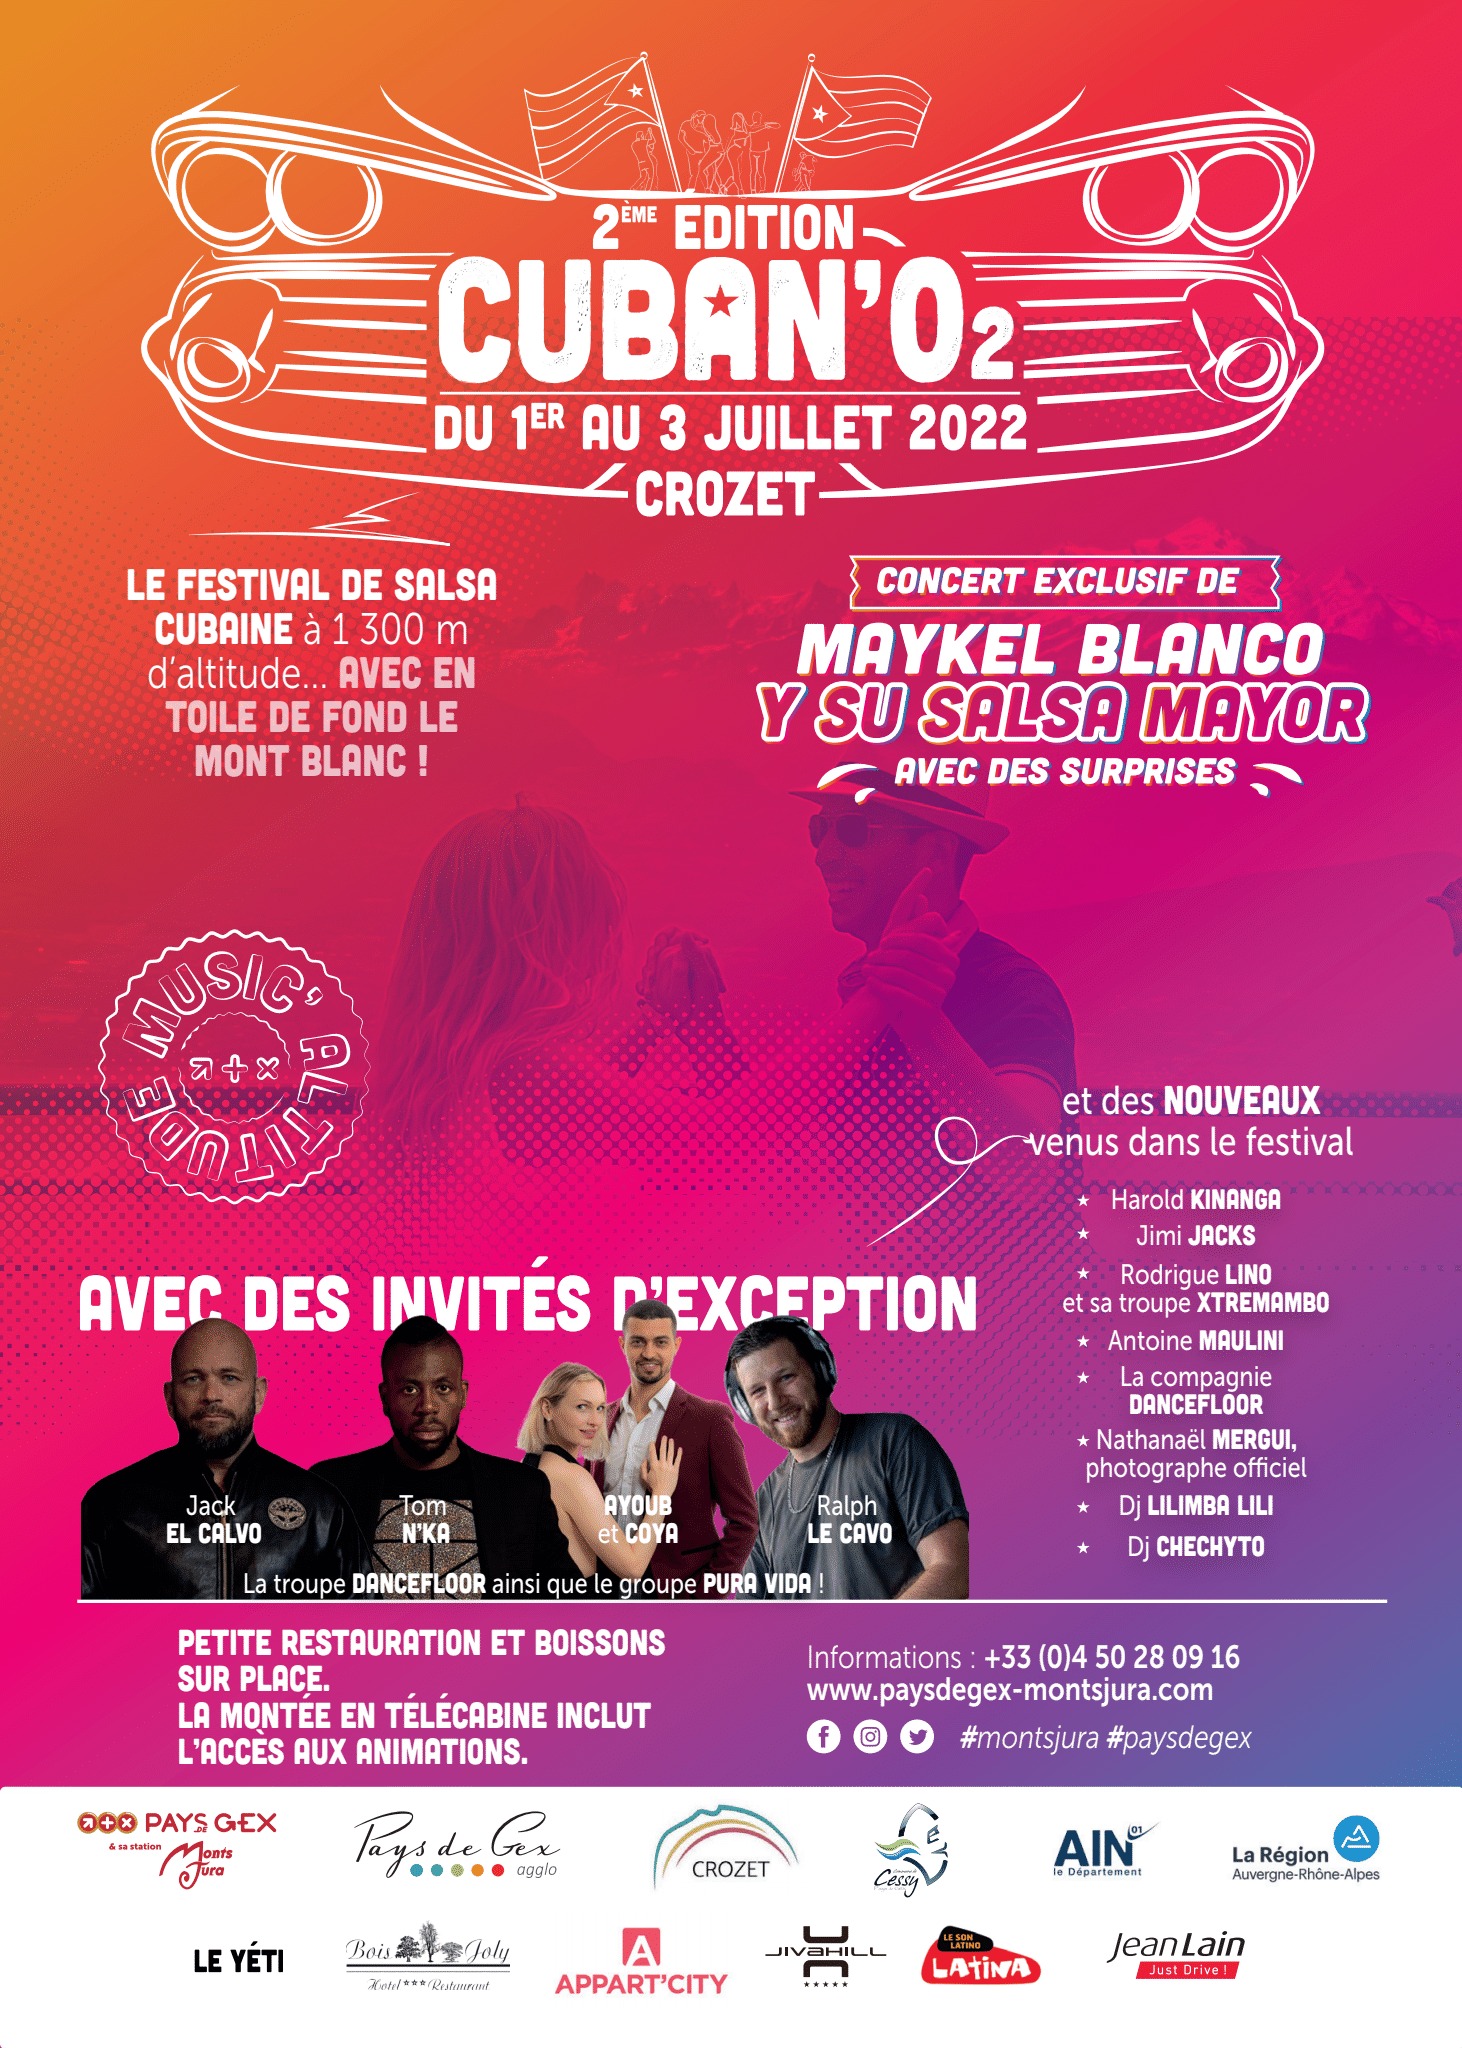 Cuban’O2 premier festival de salsa cubaine d’Europe, en pleine montagne, à 1300 mètres d’altitude